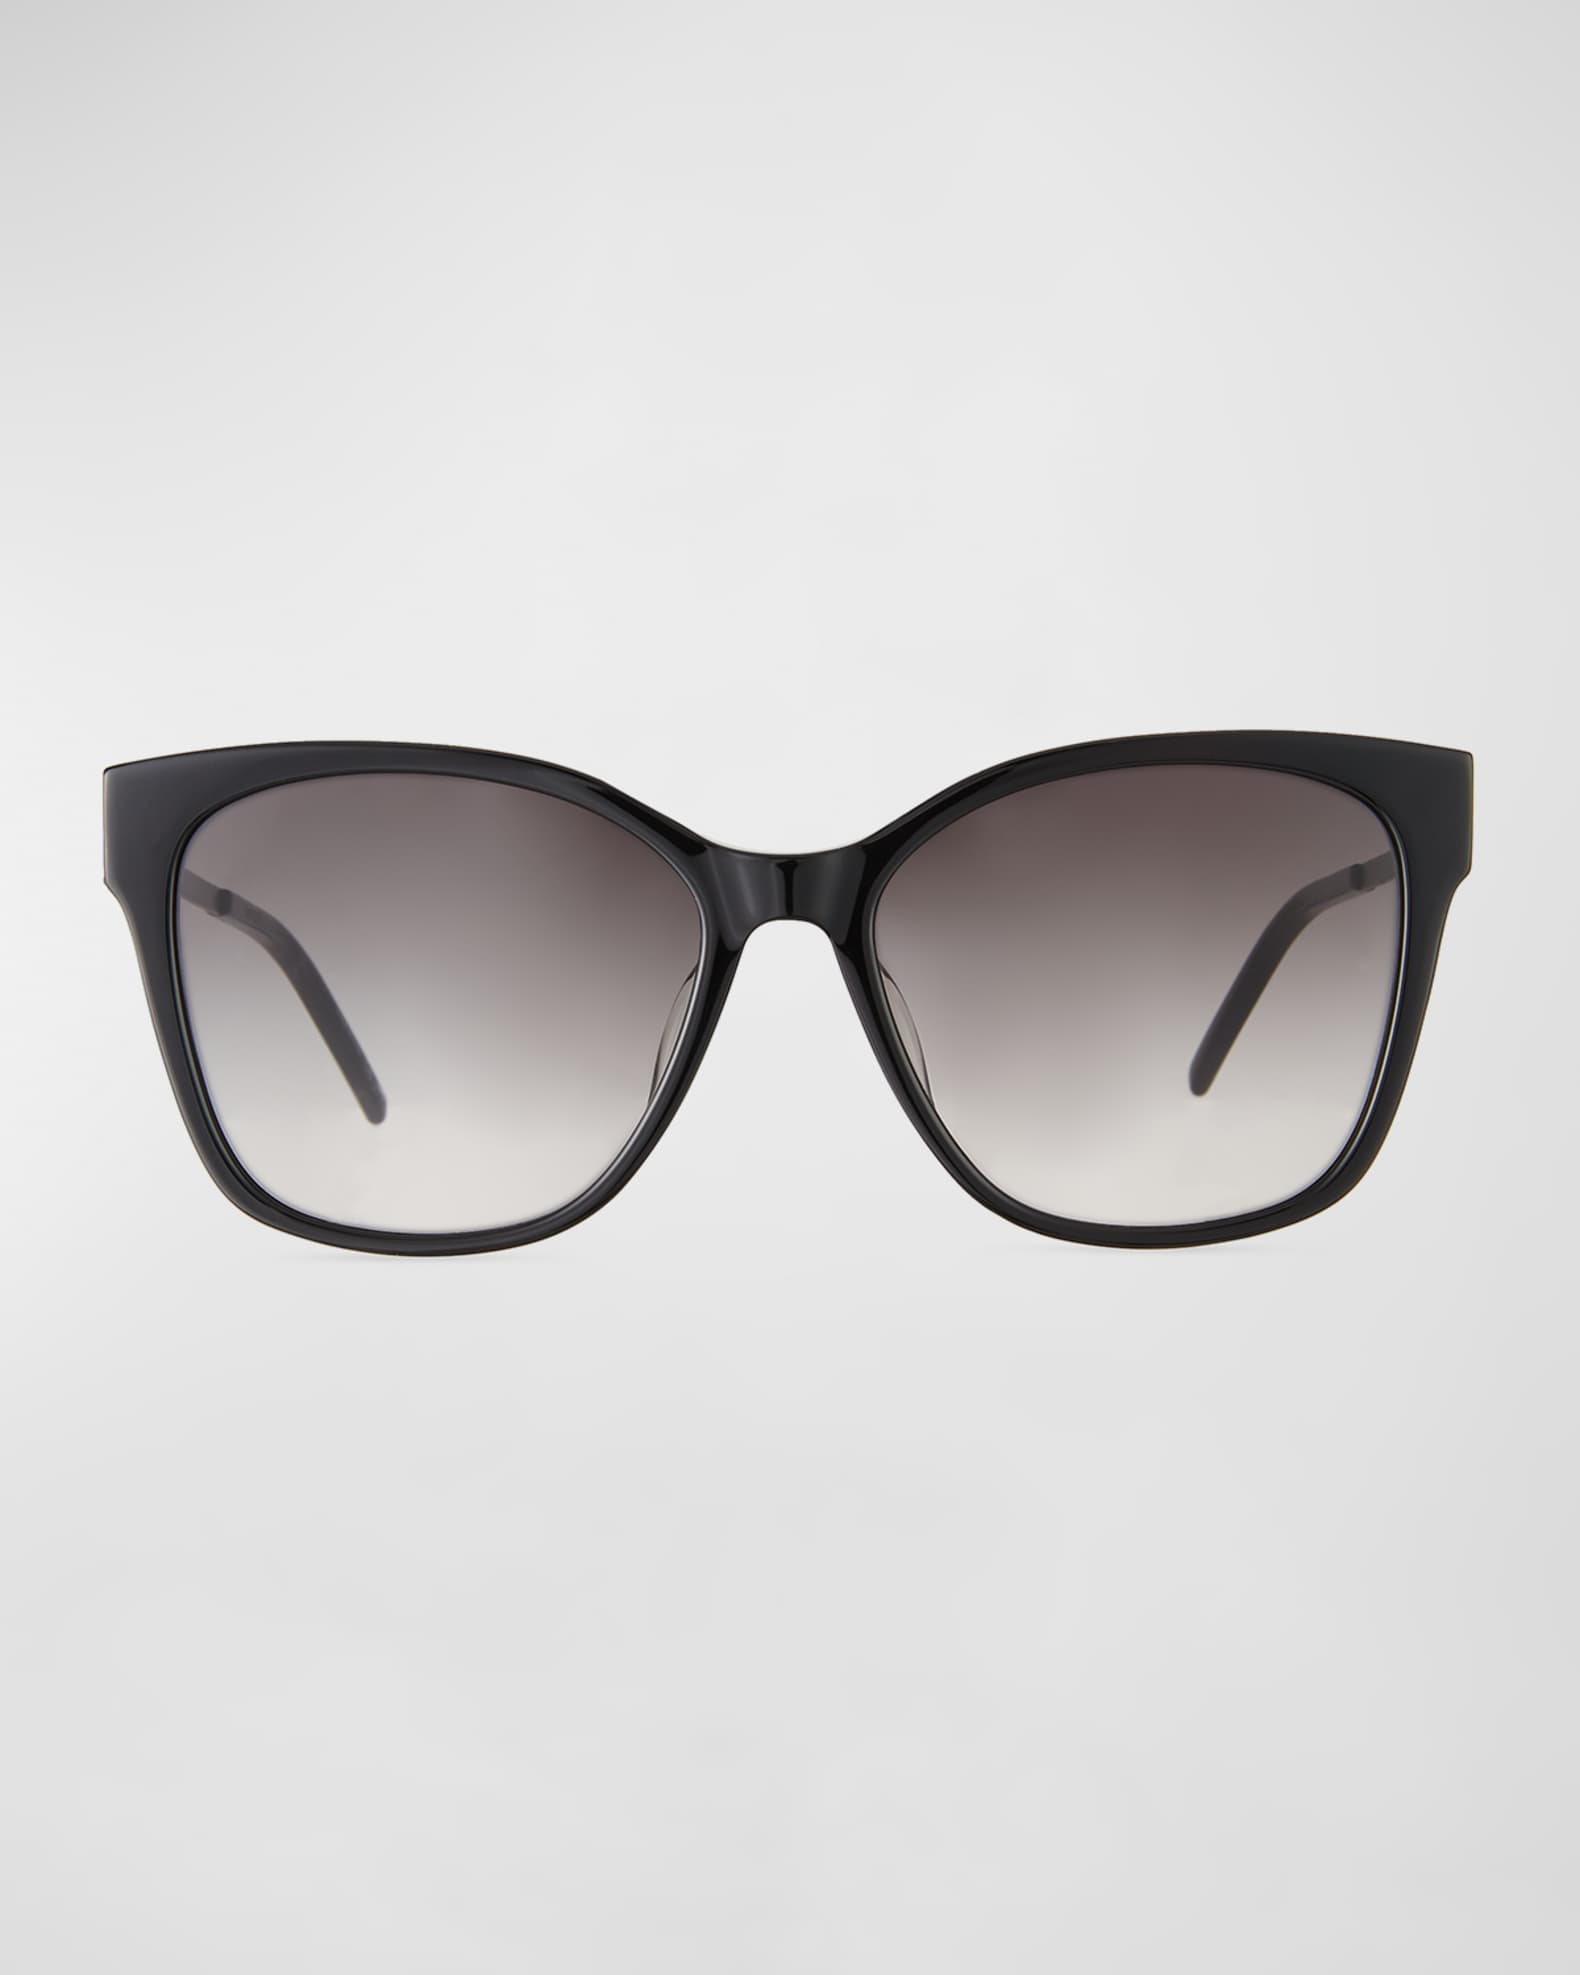 Saint Laurent Square Acetate & Metal Sunglasses | Neiman Marcus